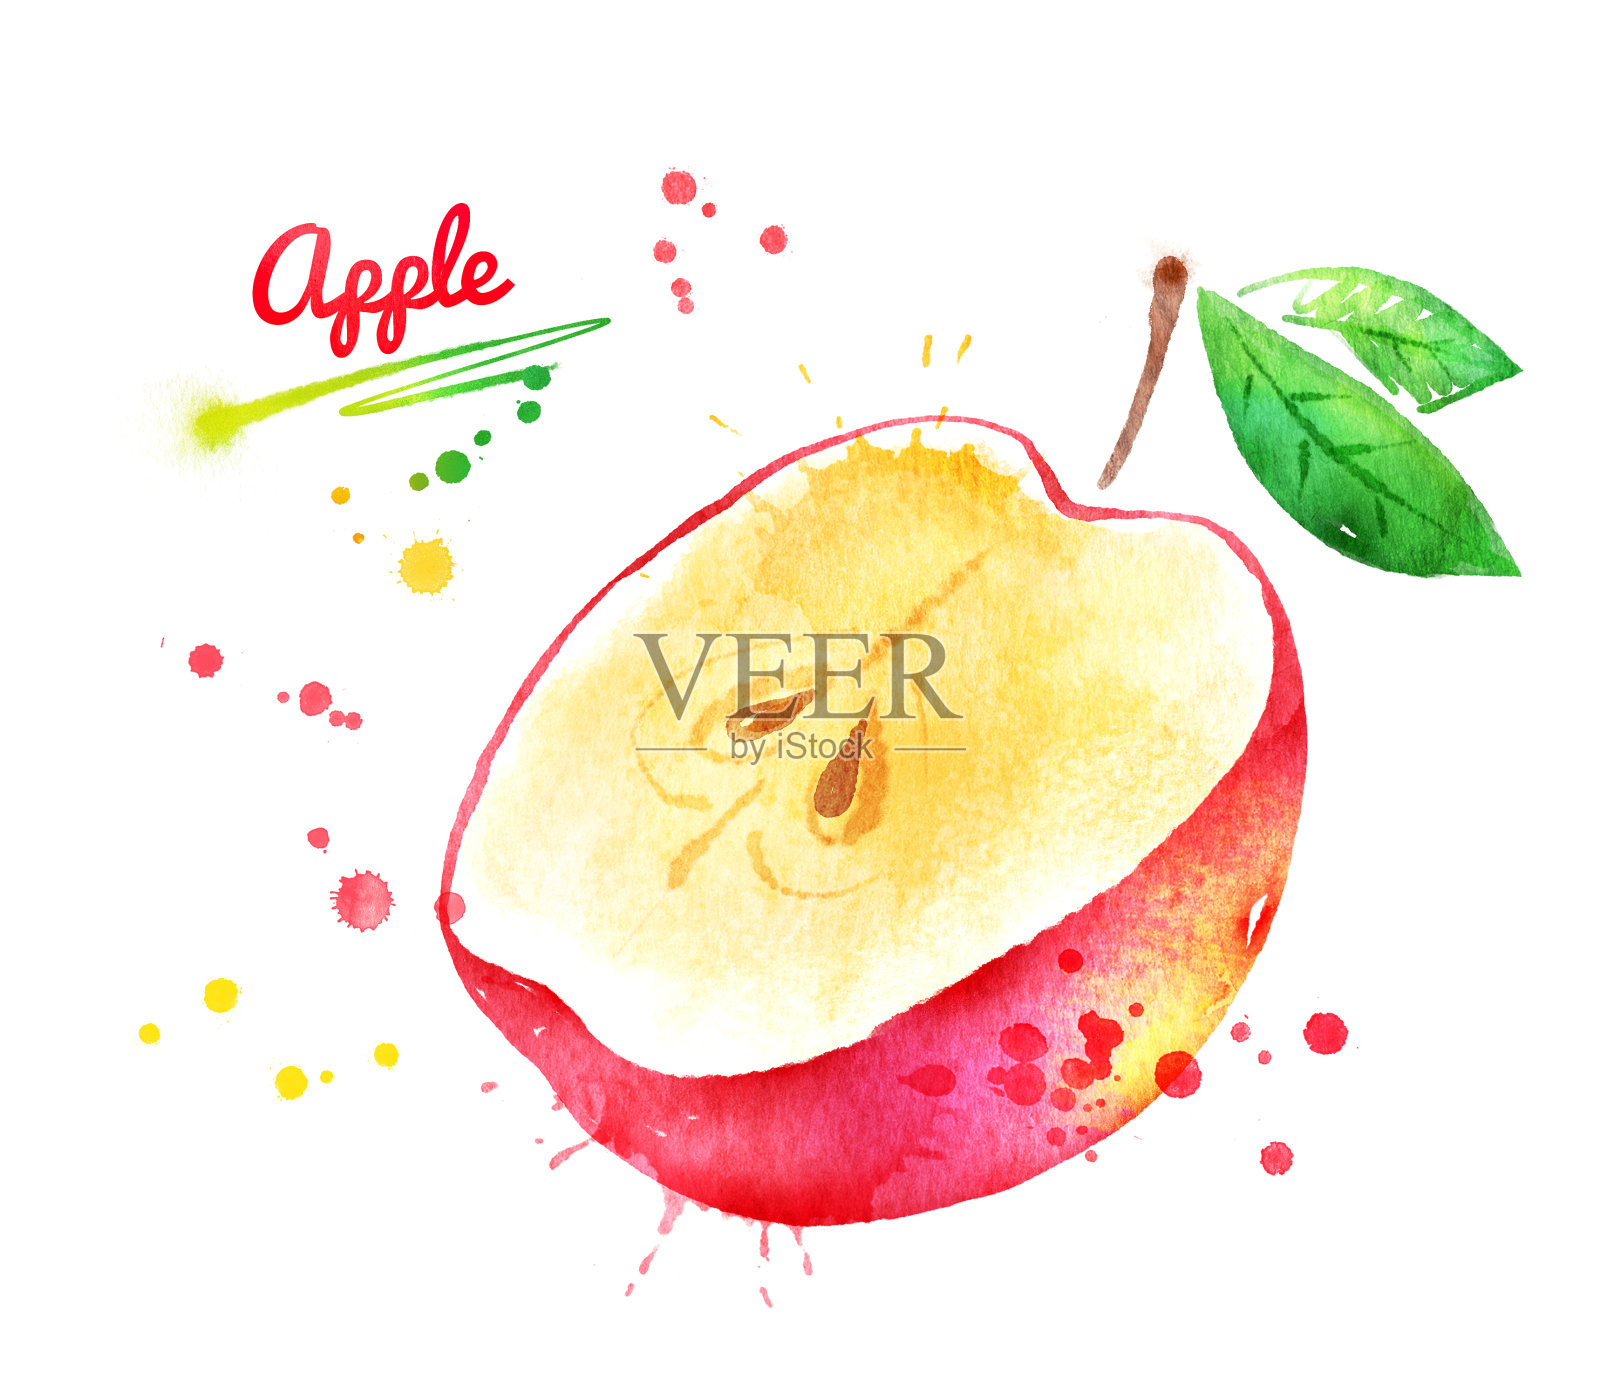 半颗红苹果的水彩画插画图片素材